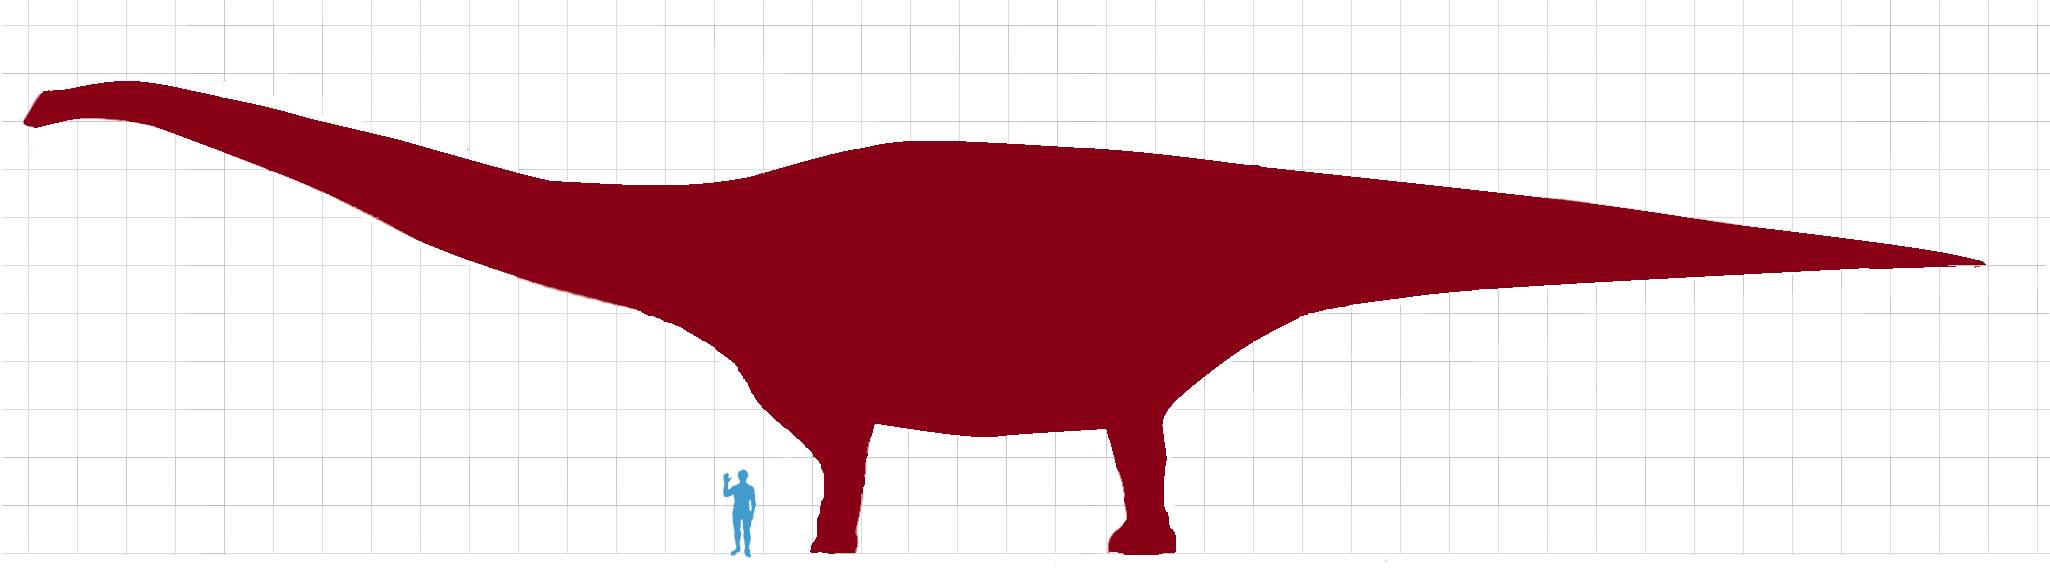 Largest dinosaurs: Patagotitan mayorum vs human size comparison